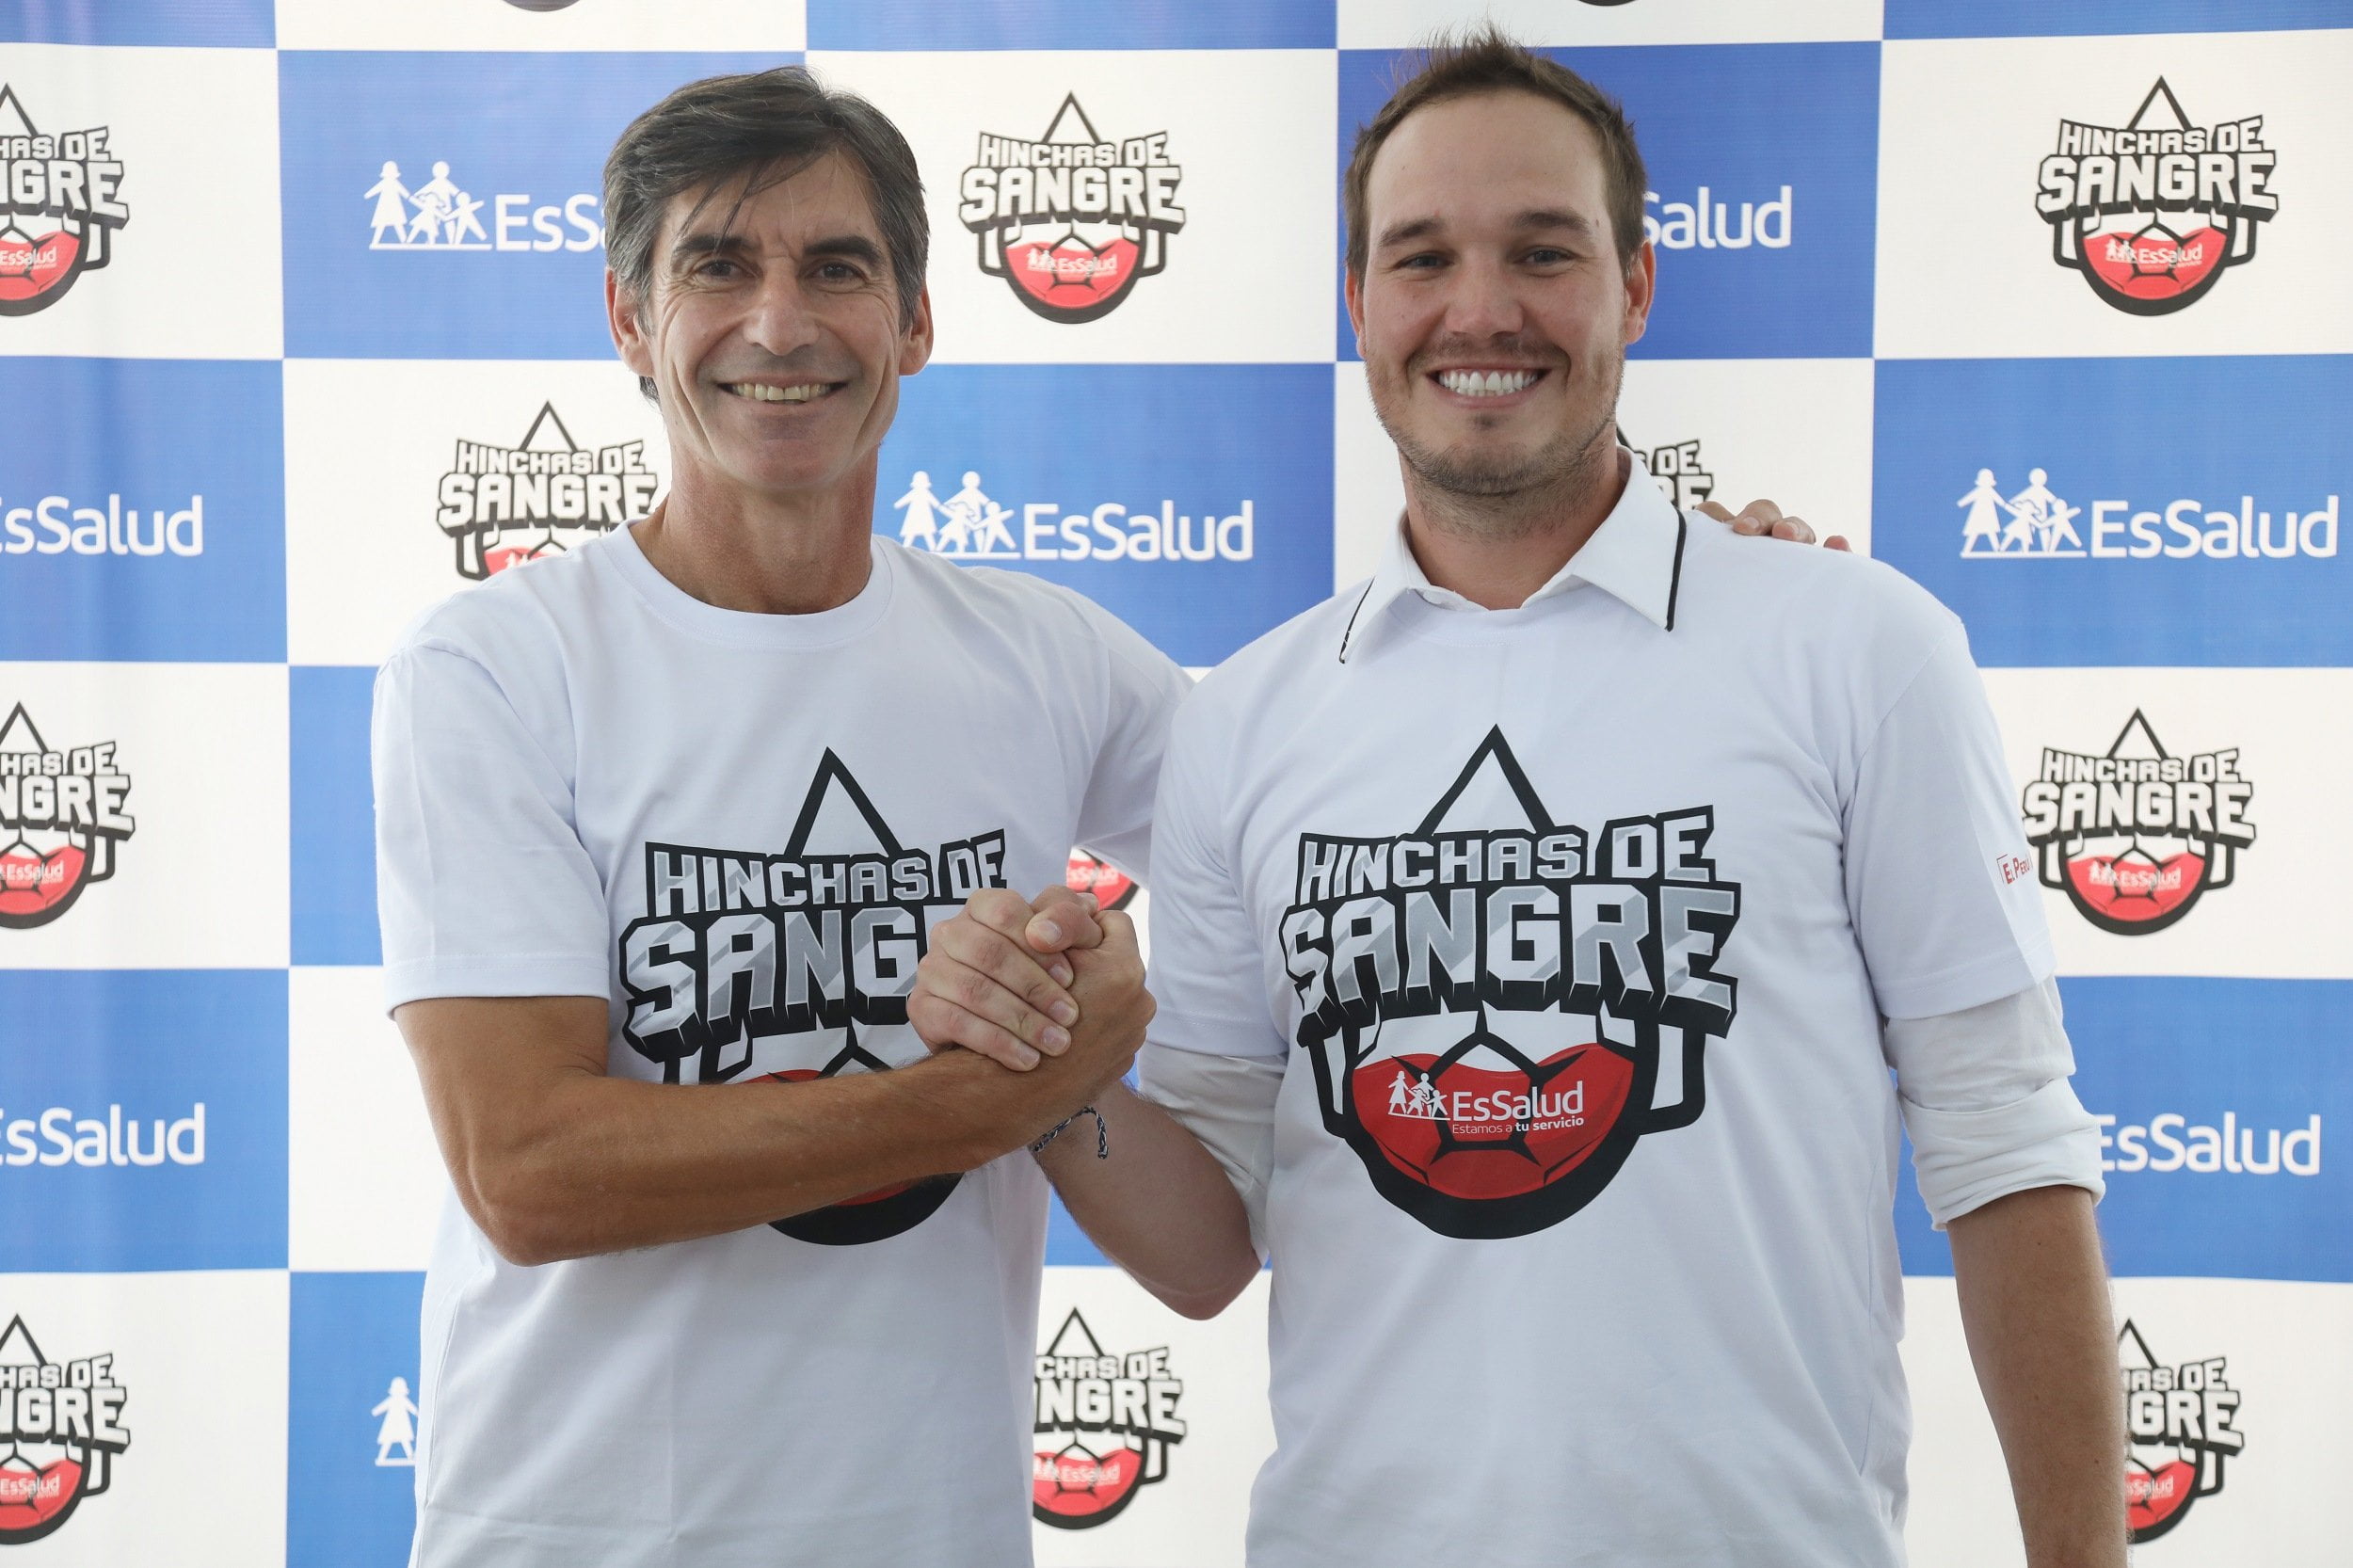 George Forsyth y Óscar Ibáñez apoyan "hinchas de sangre" para salvar vidas